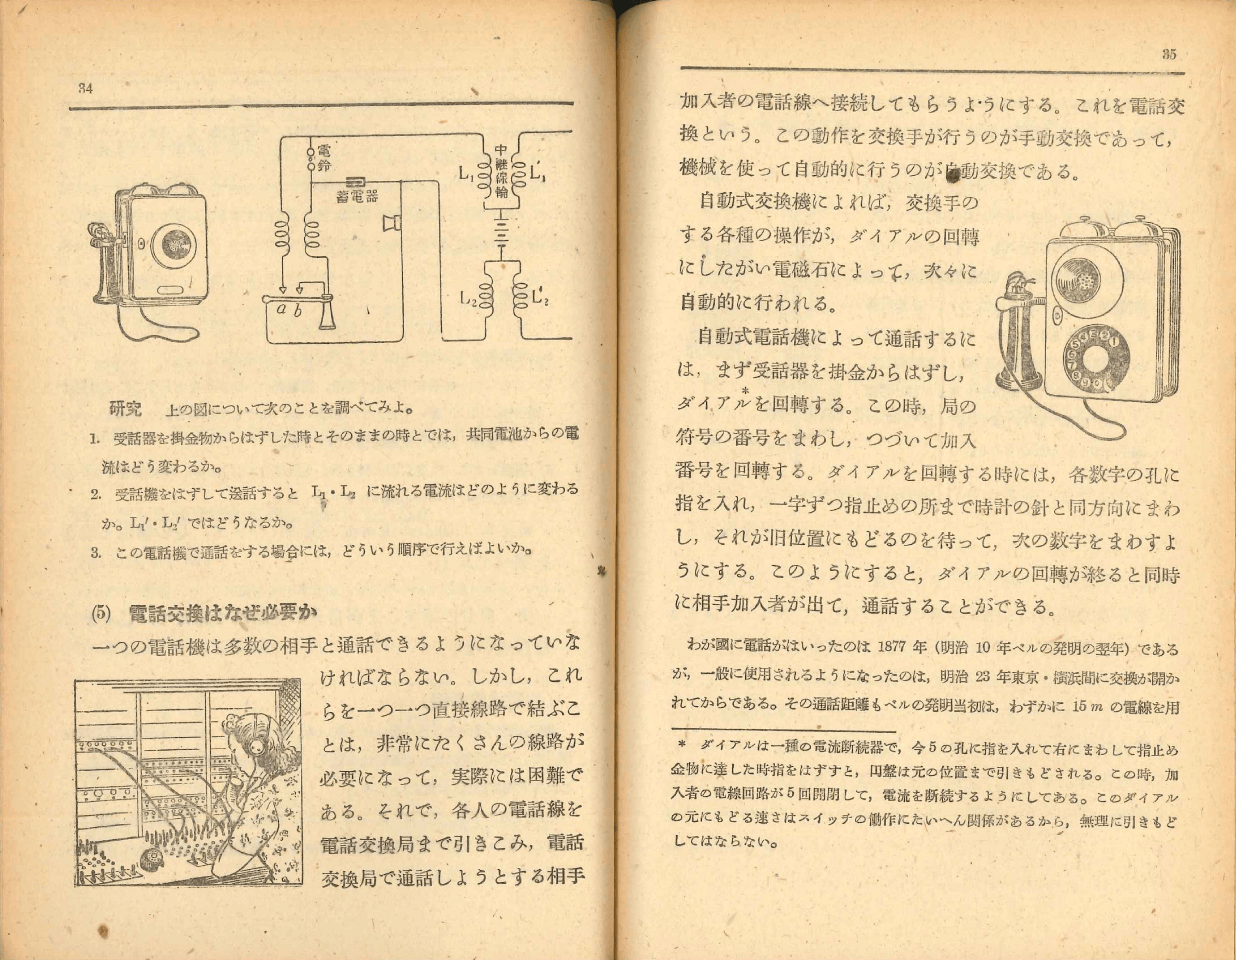 昭和22年版 私たちの科学16 p.34-p.35